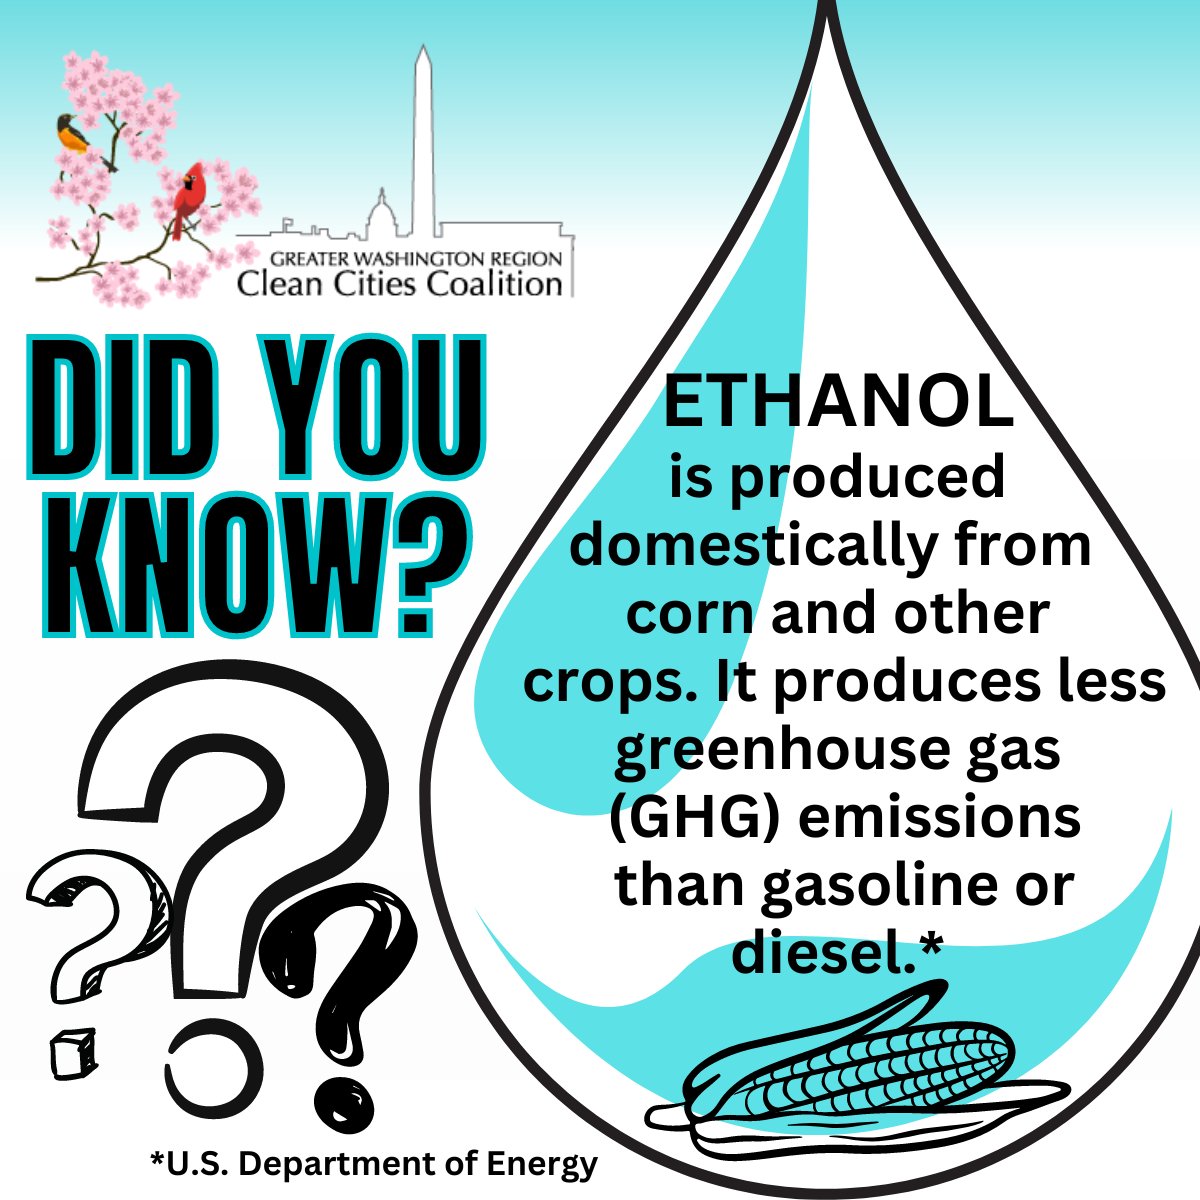 #ethanol #alternativefuels #GWRCCC